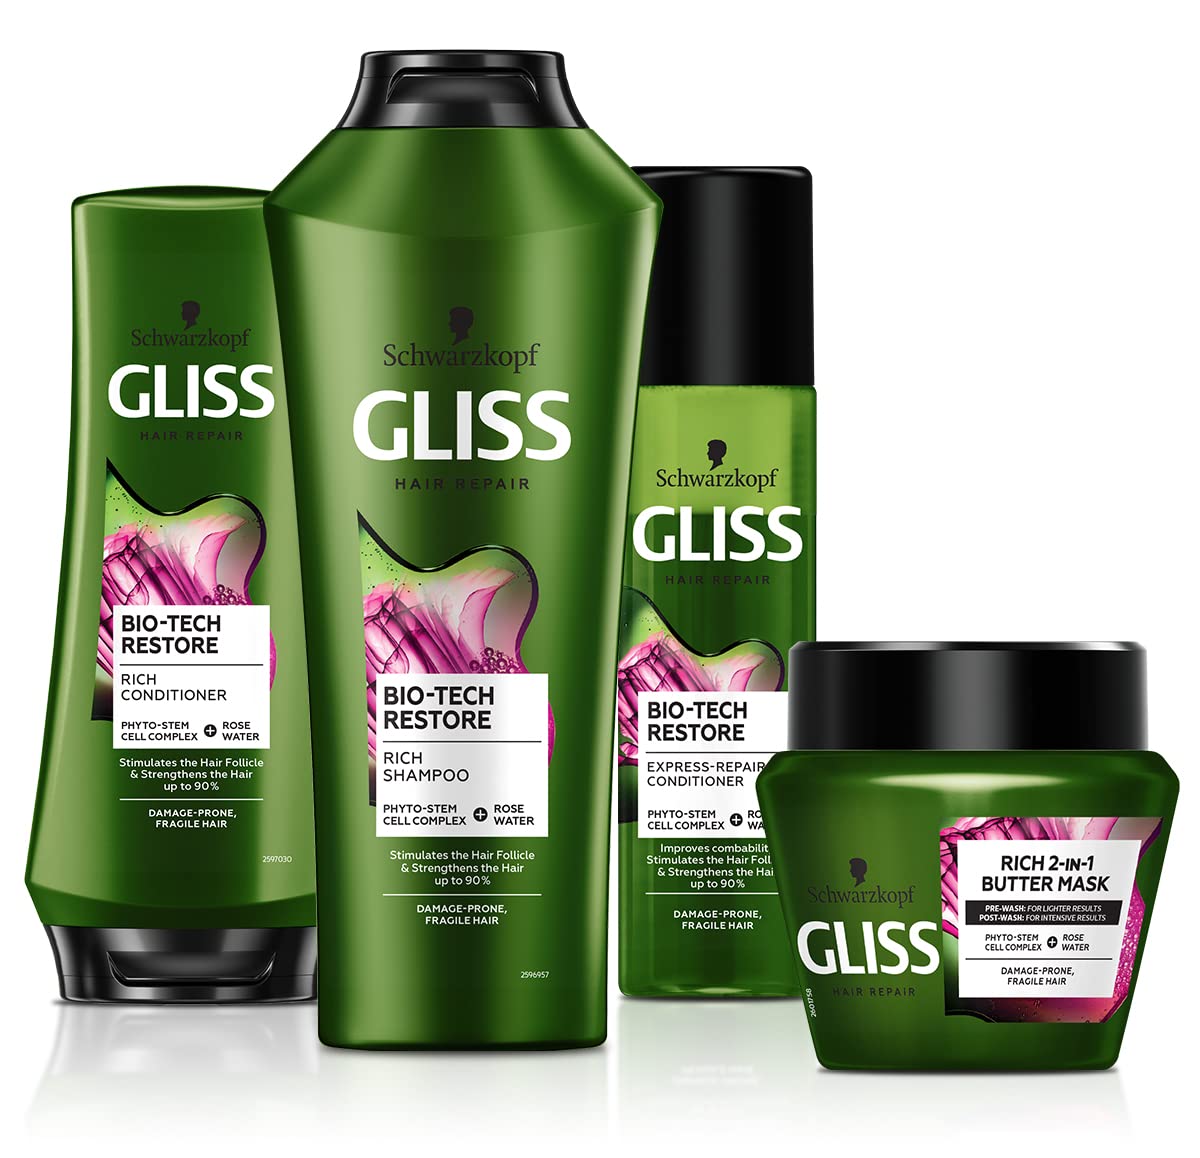 schwarzkopf gliss kur bio-tech restore rich shampoo szampon do włosów